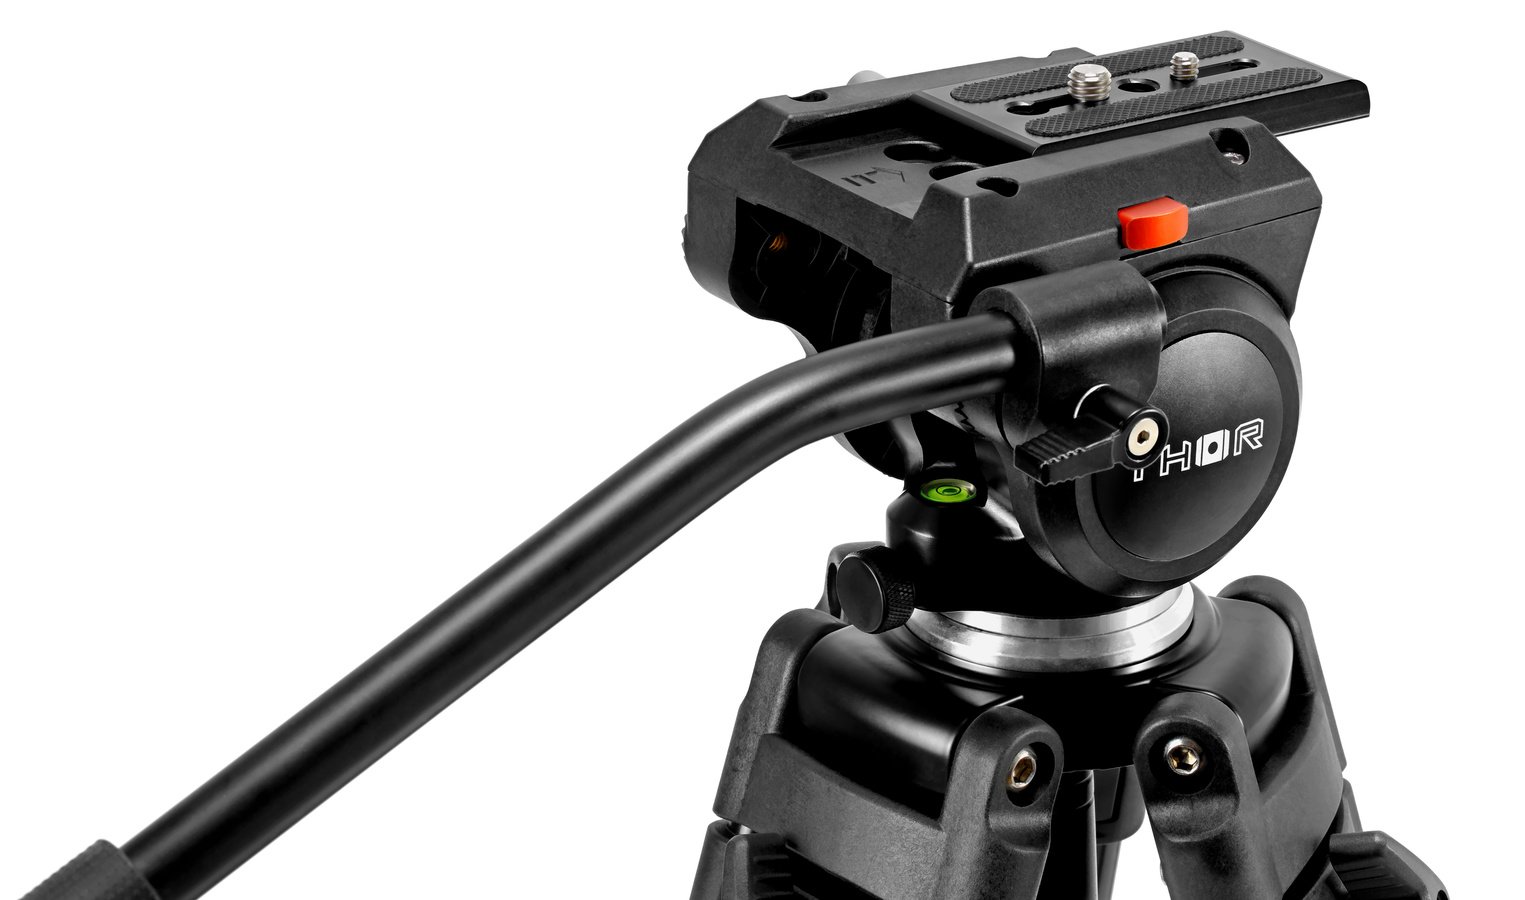 Trotz des Kunststoffgehäuse eignet sich der DVH-7504 Kopf für Kameras bis 4kg.